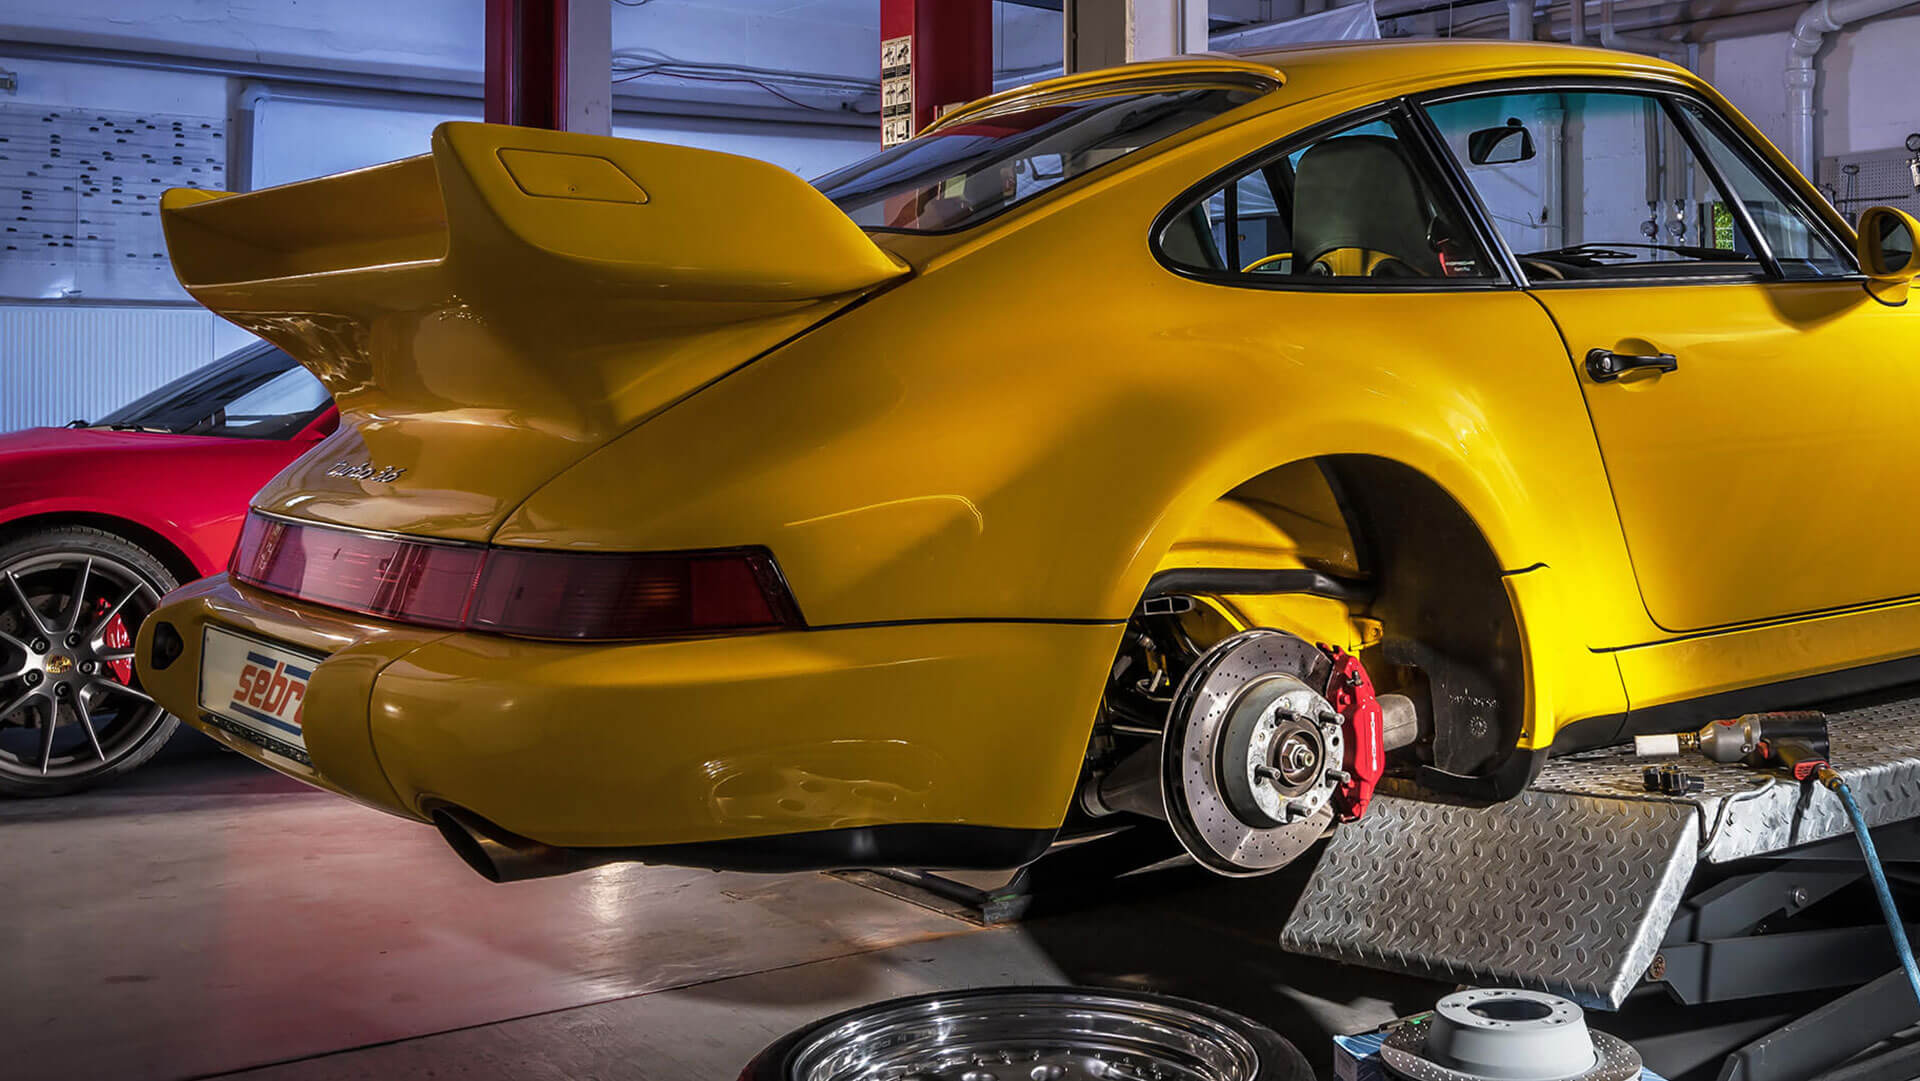 Bremsscheiben sowie Motor-, Antriebs- und Fahrwerkskomponenten für Porsche Werkstätten